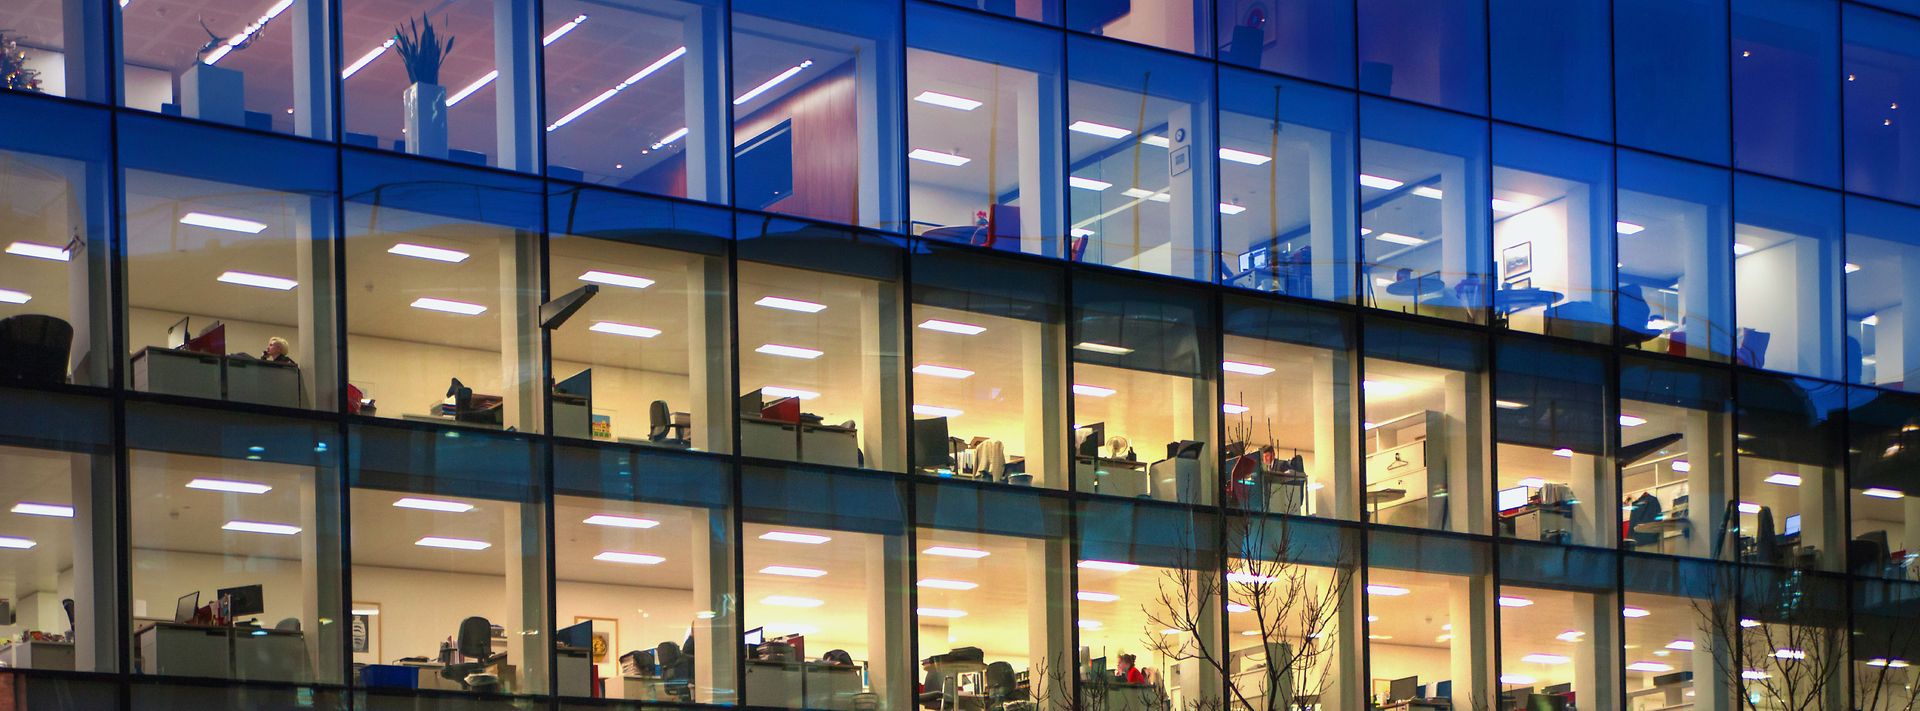 Gebäude mit Glasfassade gibt Blick auf beleuchtete Büroräume